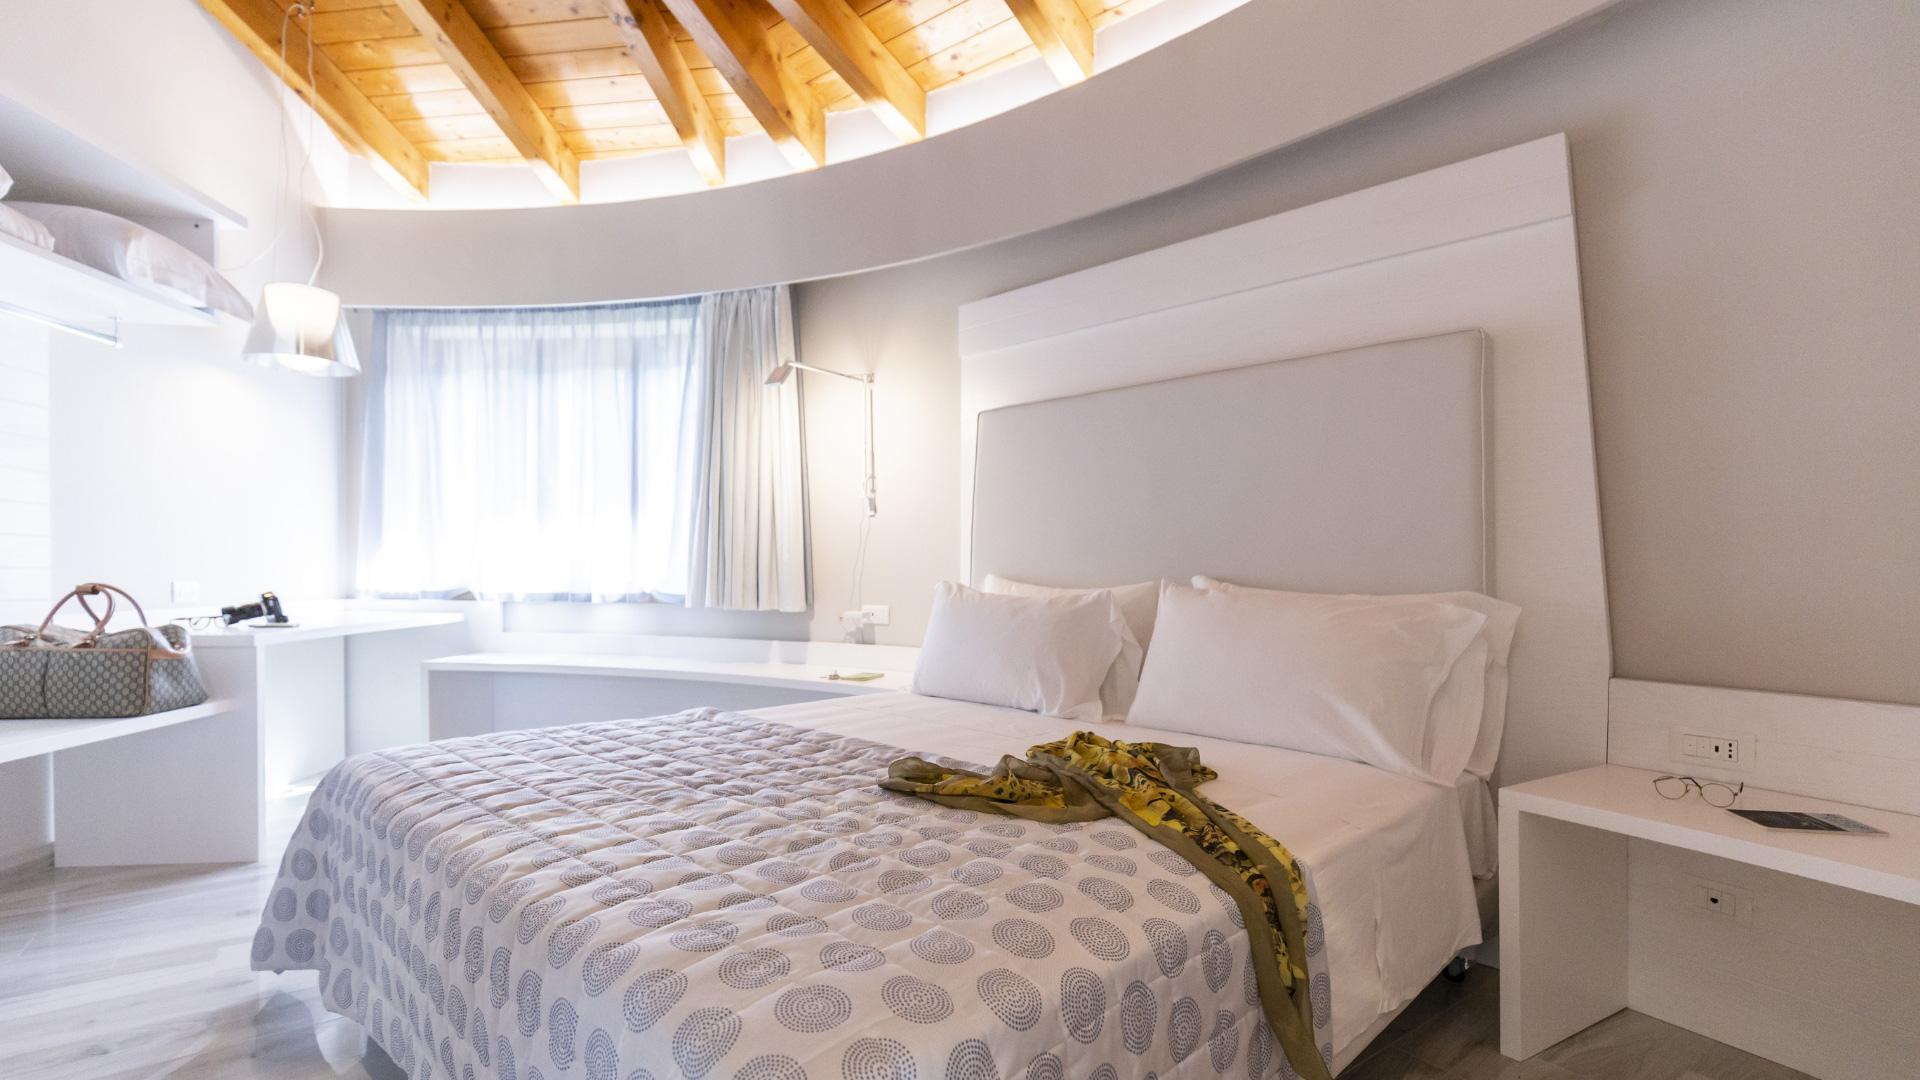 Modernes Zimmer mit Doppelbett, Holzdecke und weißen Möbeln.